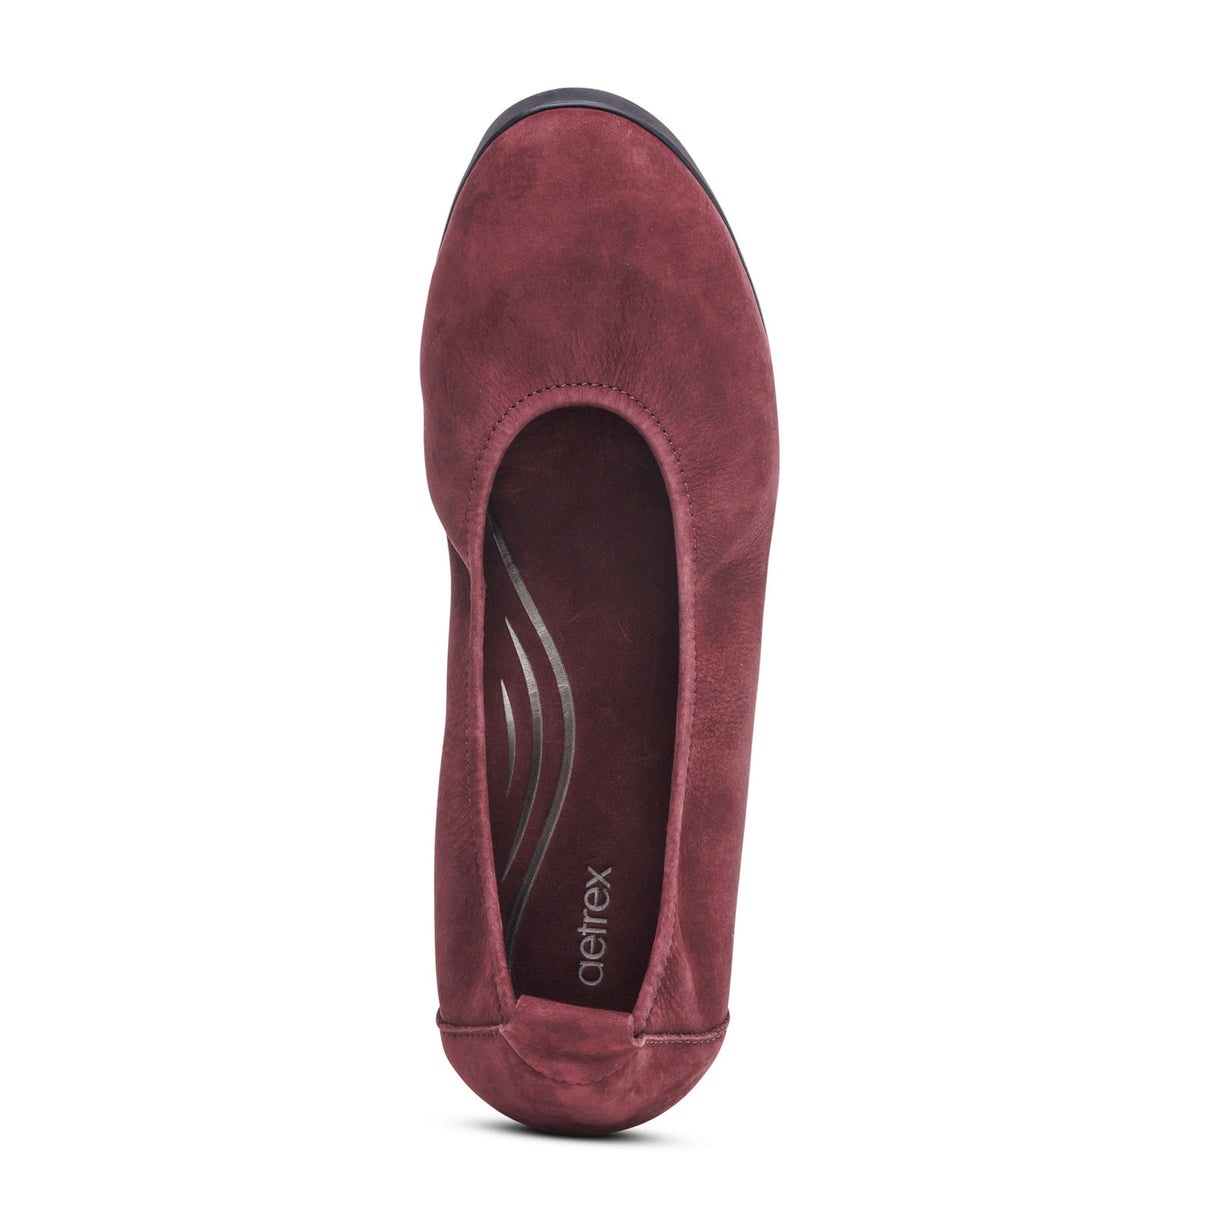 Aetrex Brianna Ballet Flat (Women) - Burgundy Dress-Casual - Flats - The Heel Shoe Fitters